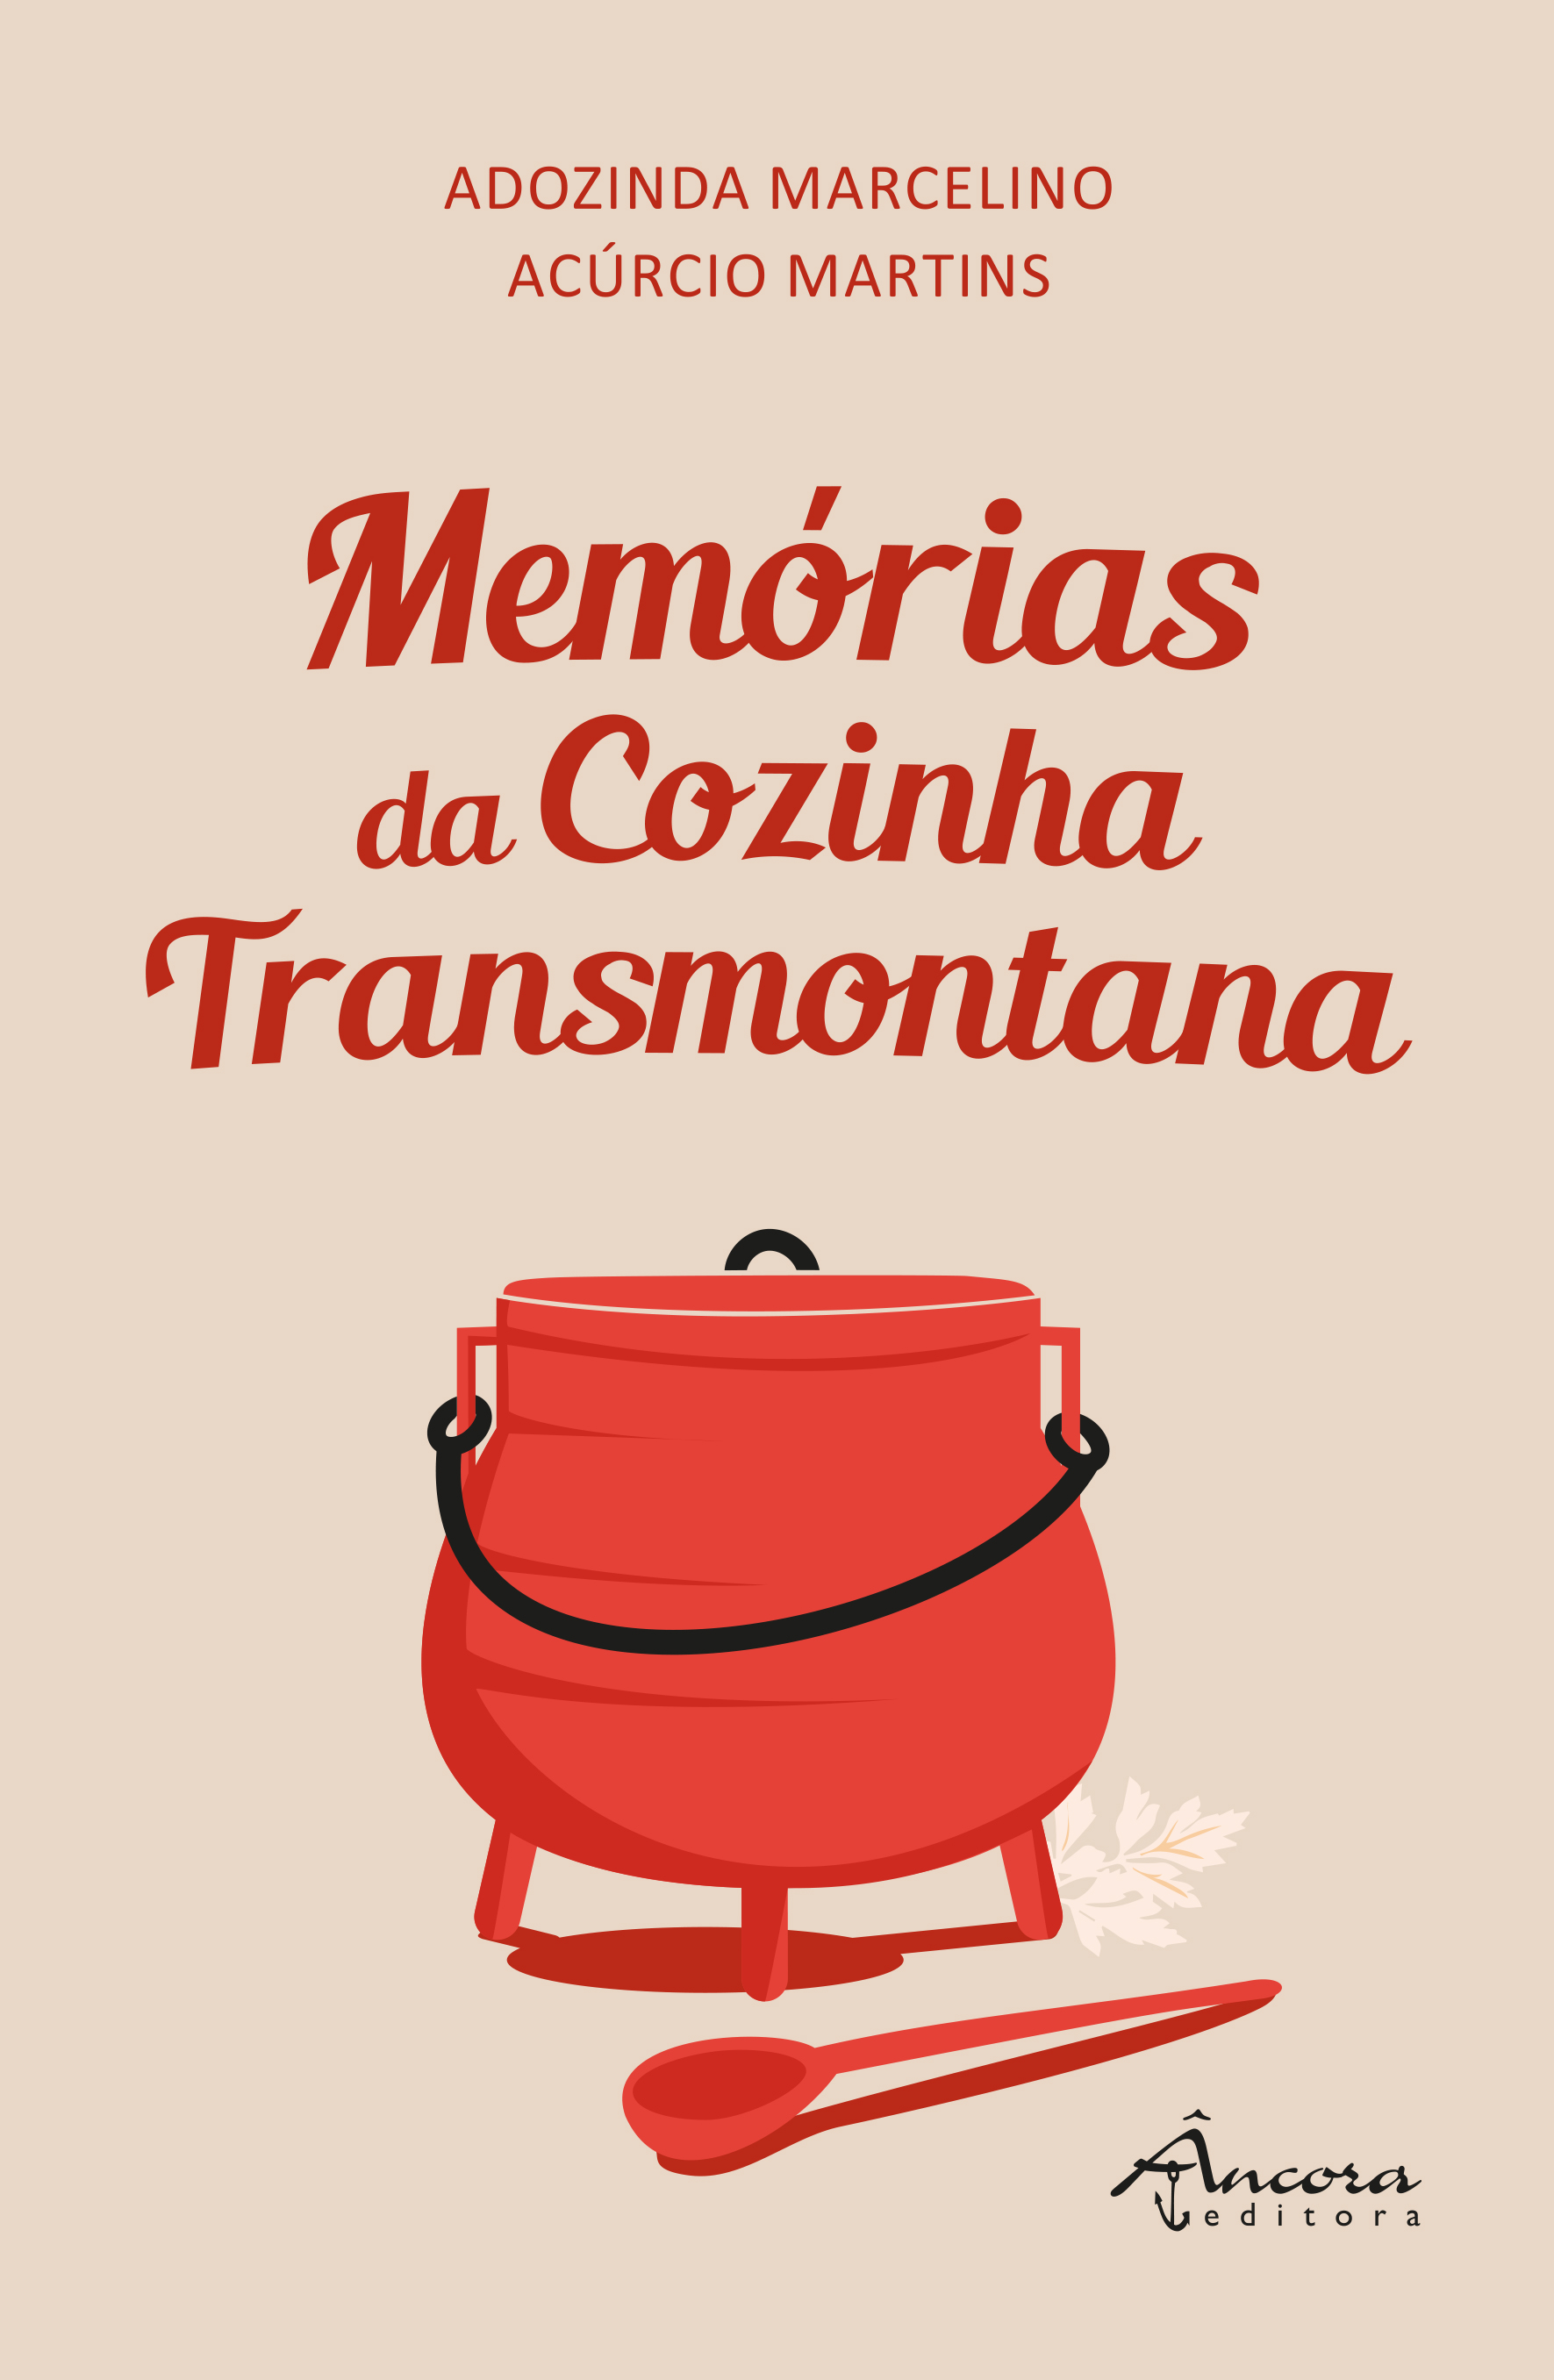 Memórias da Cozinha Transmontana